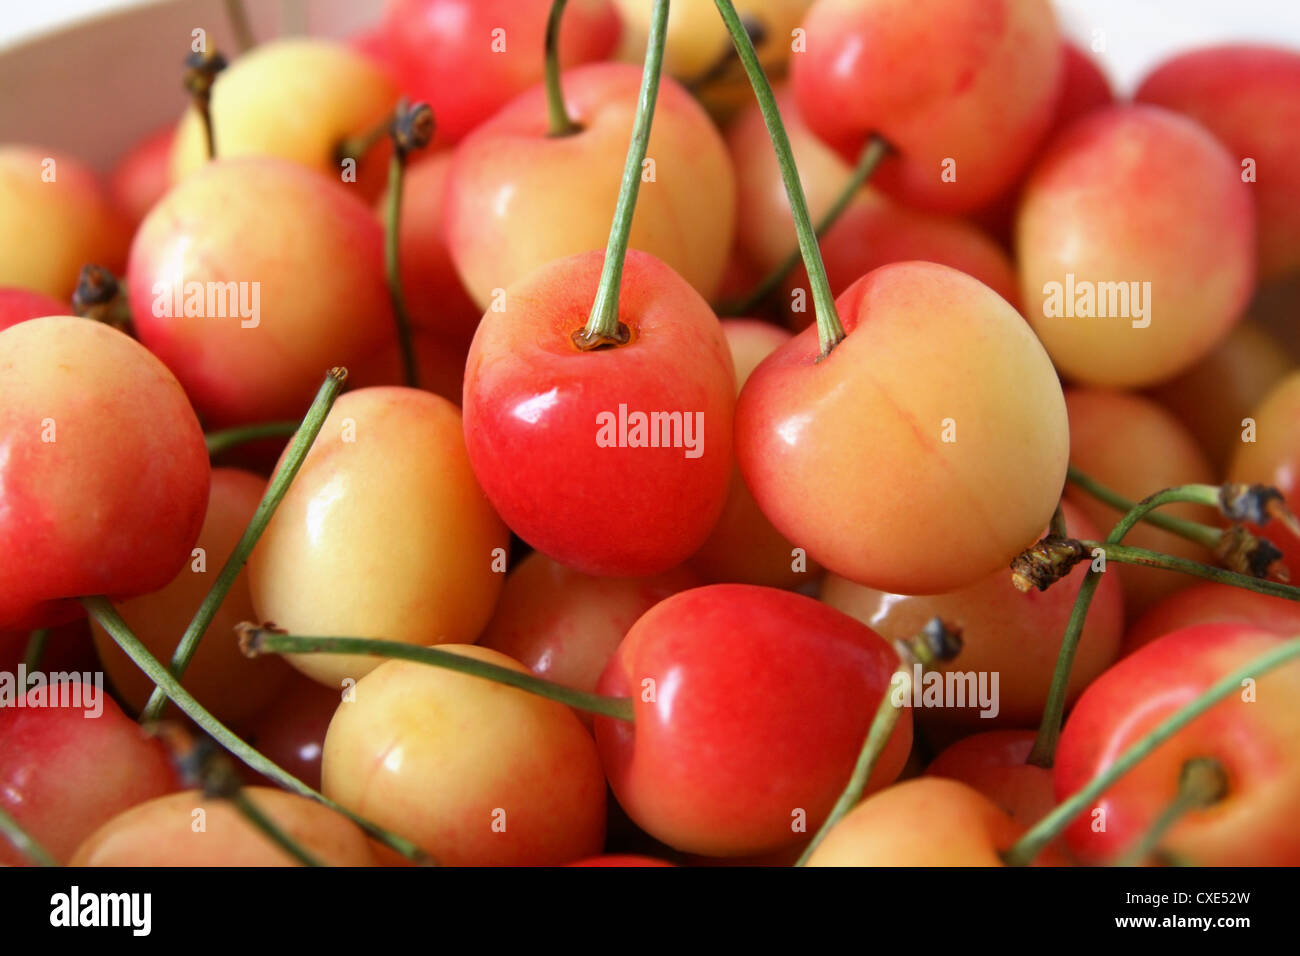 red and yellow rainier cherries Stock Photo